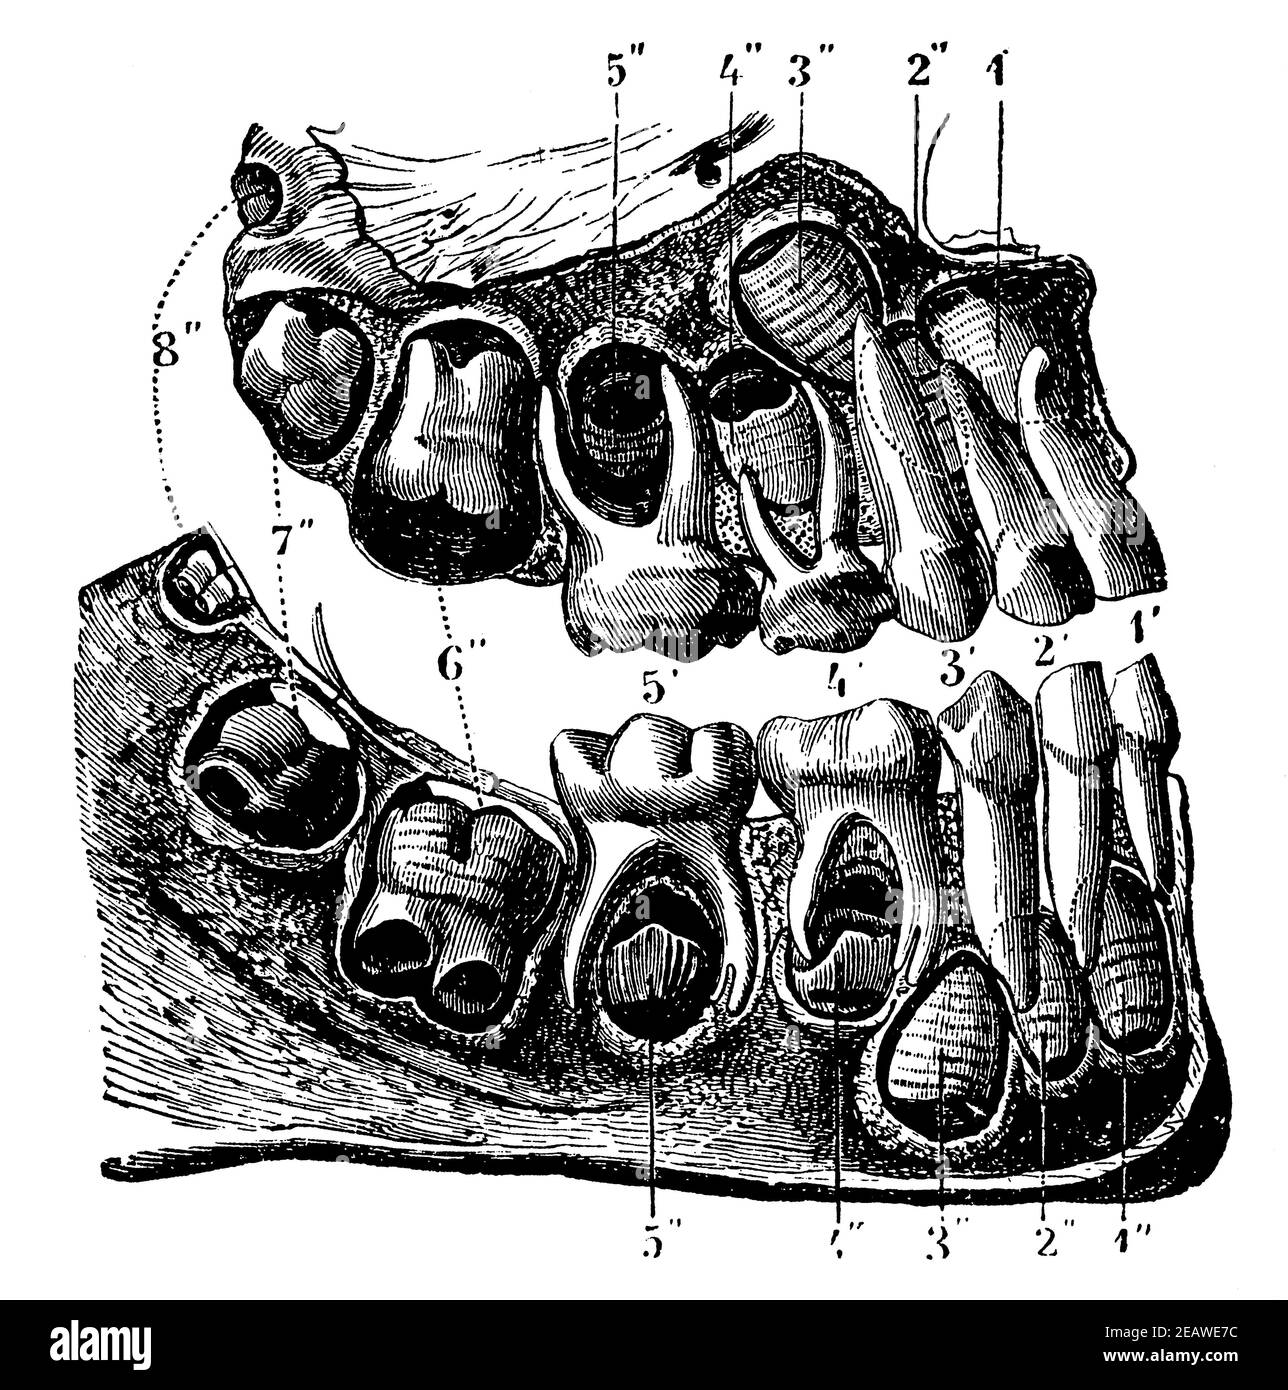 Premières dents de l'enfant, dont les racines sont élevées pour montrer les germes de la deuxième dent. Illustration du 19e siècle. Allemagne. Arrière-plan blanc. Banque D'Images